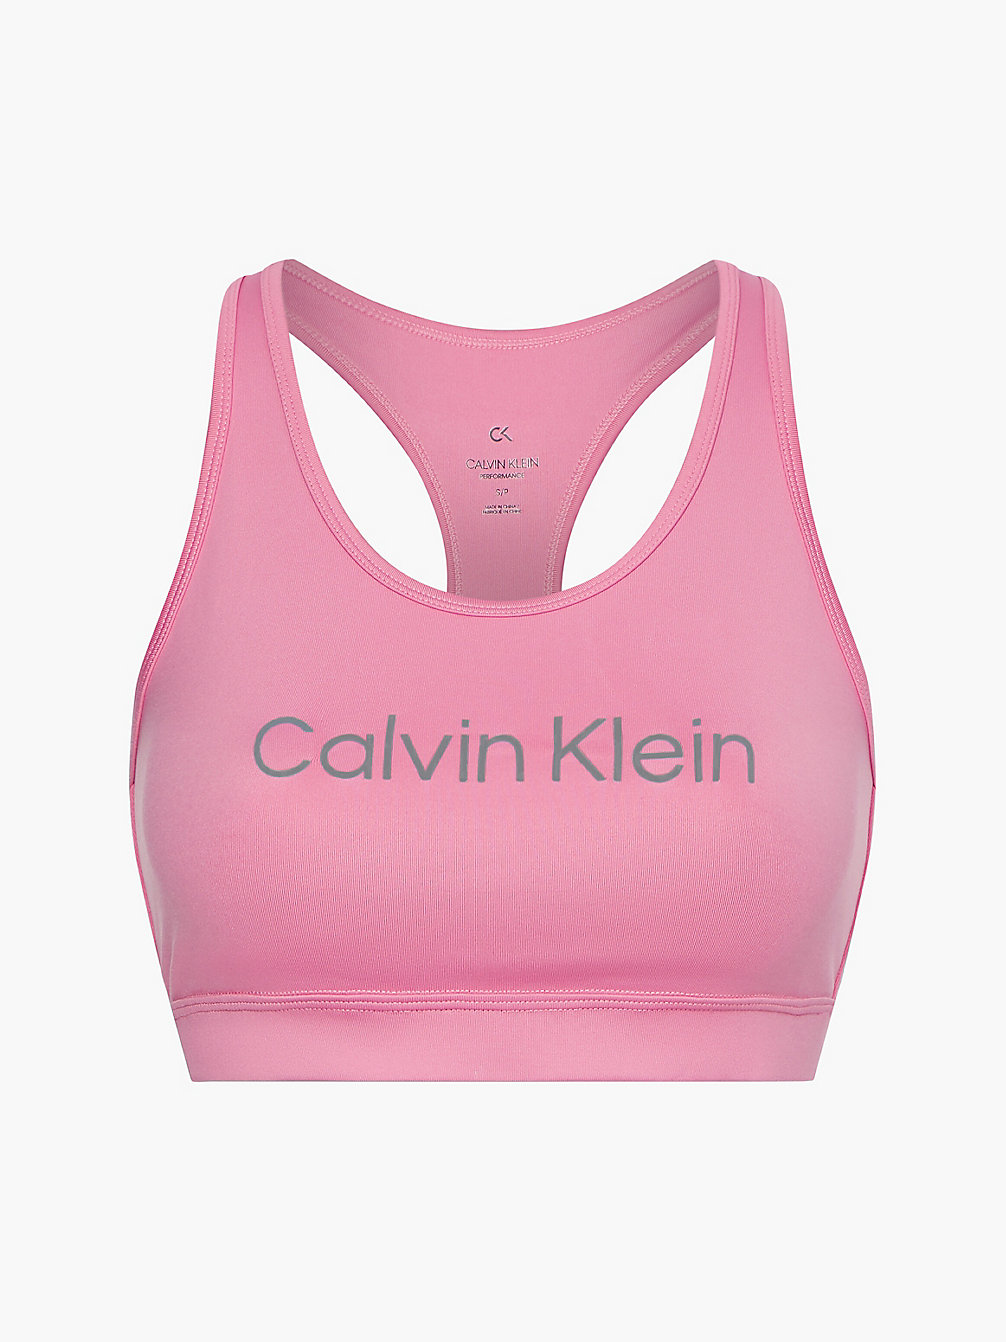 ROSEBLOOM > Бюстгальтер для среднеинтенсивных тренировок > undefined Женщины - Calvin Klein